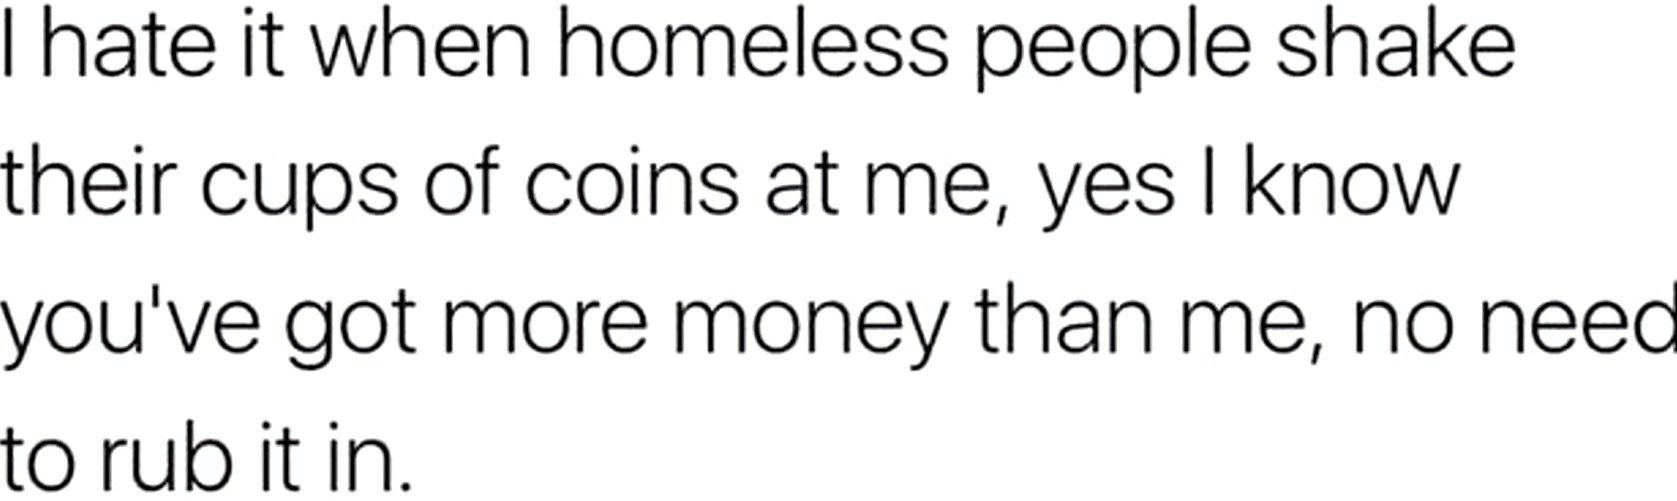 Damn homeless people - meme